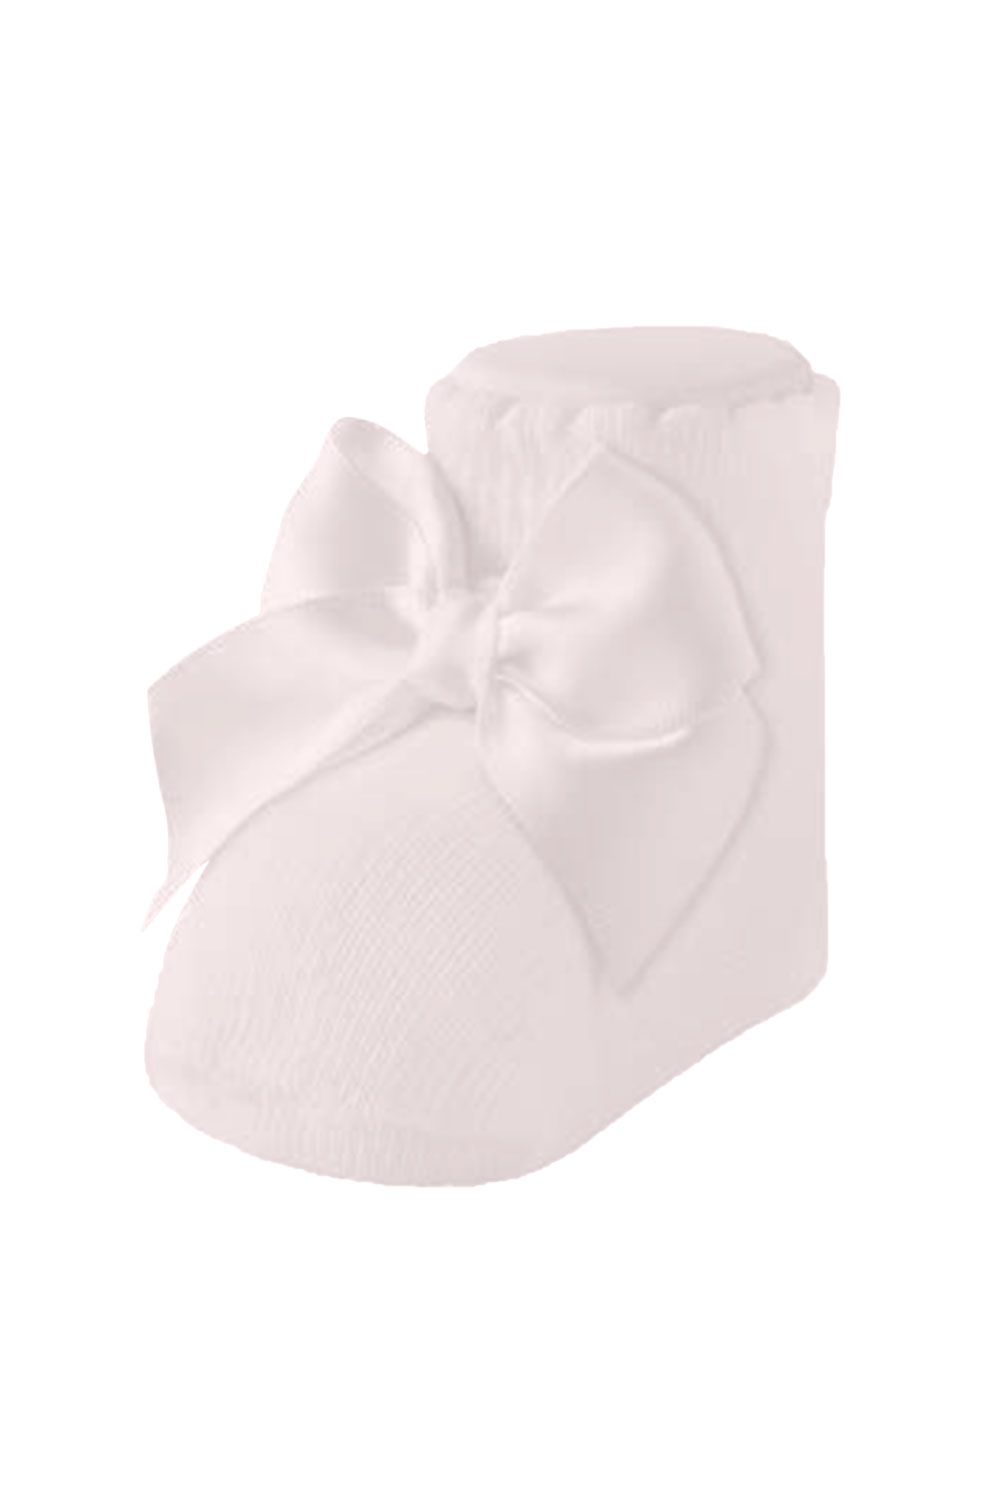 Carlomagno - Newborn Bow Socks Box